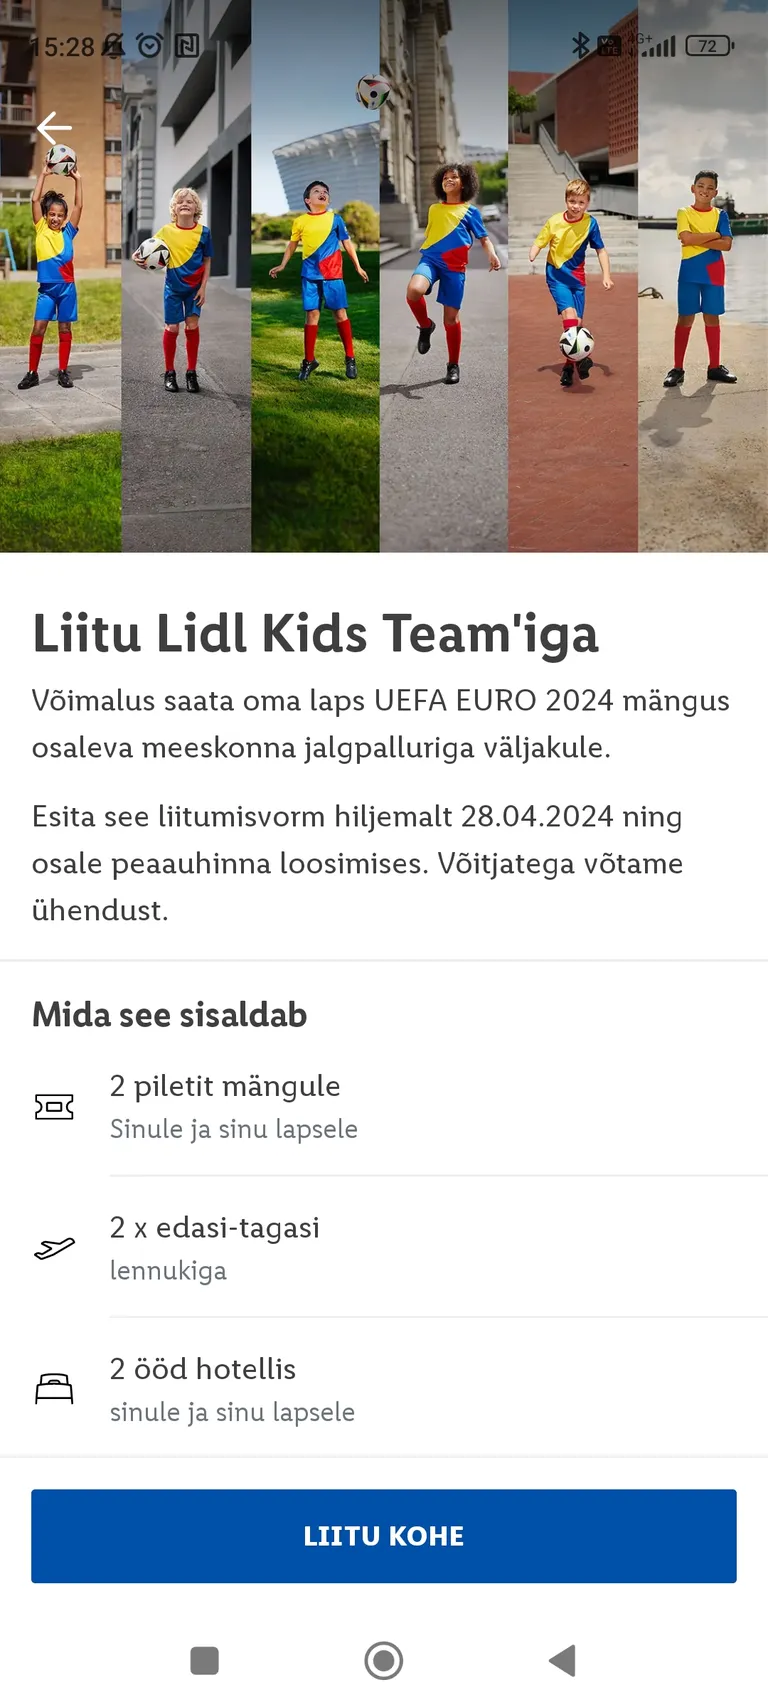 Участие в розыгрыше проходит через приложение Lidl Plus (скриншот телефона)